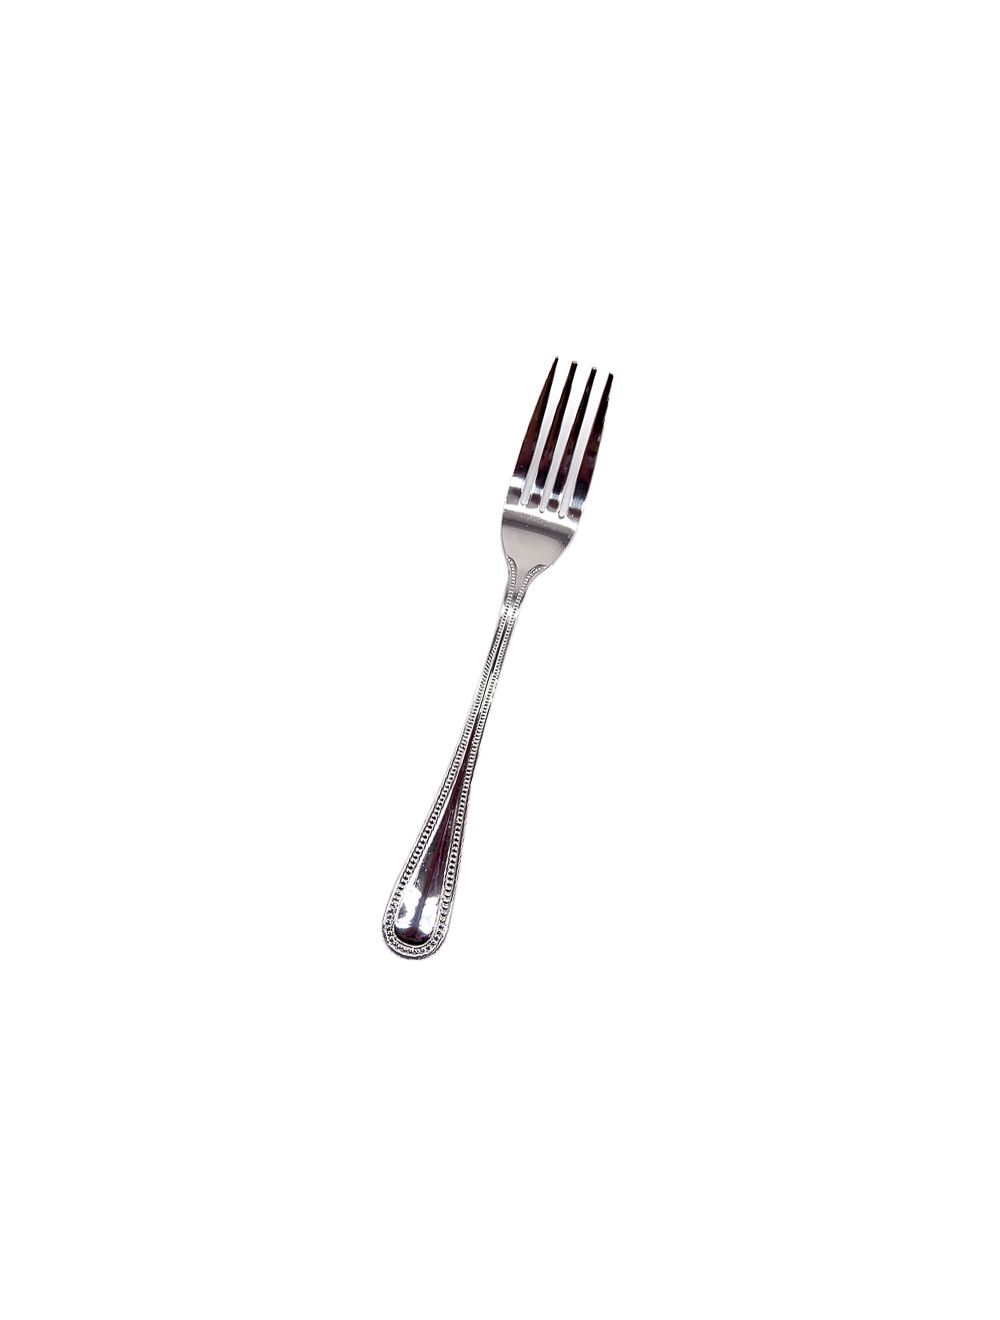 Stainless Steel Dessert Fork